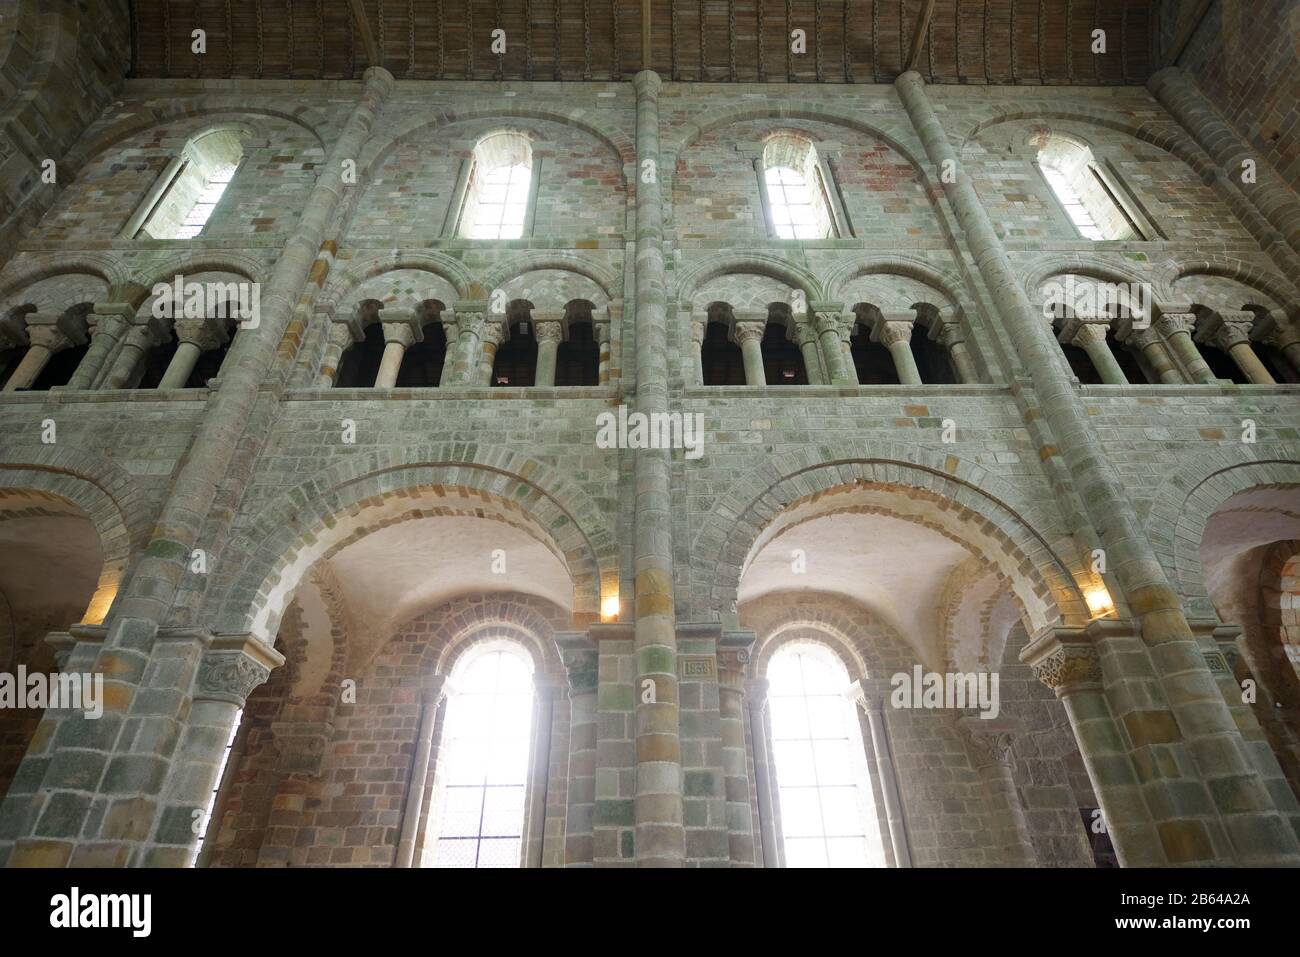 Mont Saint Michel, France - 28 août 2014 : vue intérieure de l'abbaye du Mont Saint Michel. Banque D'Images